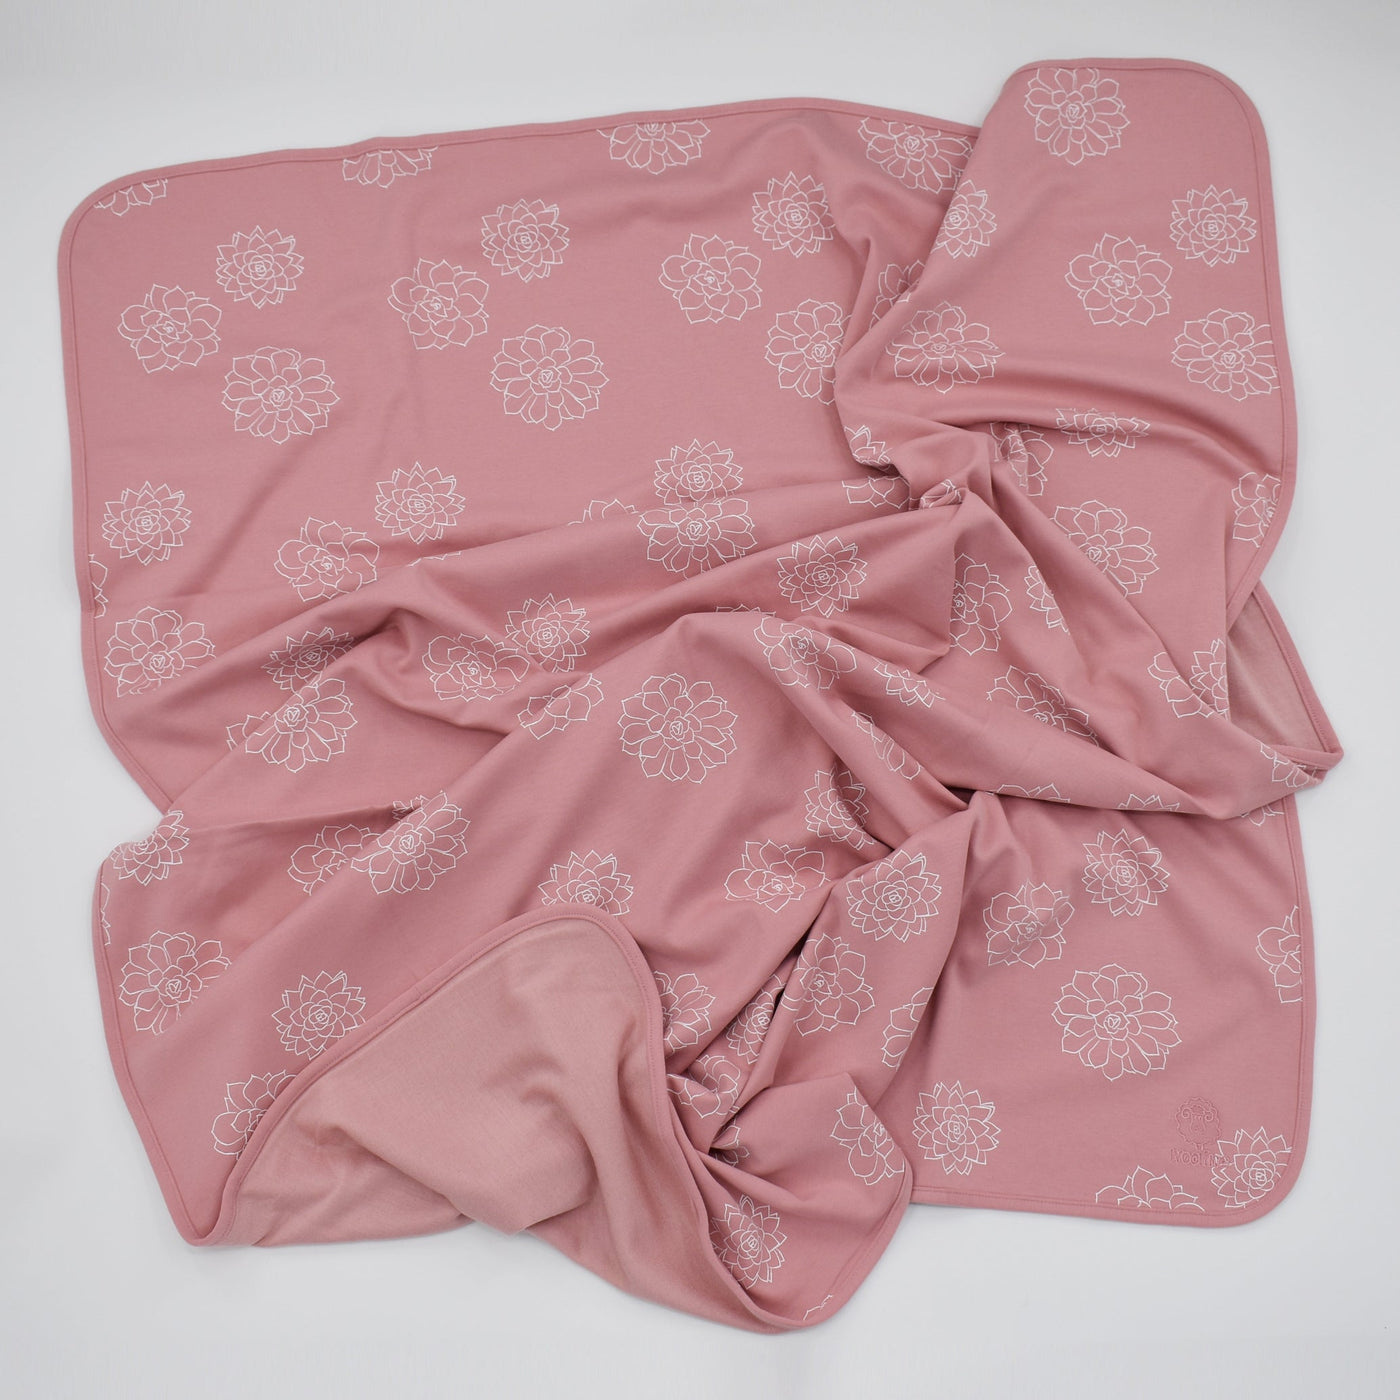 Toddler Blanket, 4 Season® Merino Wool & Organic Cotton Blanket, 52.5" x 40", Succulent